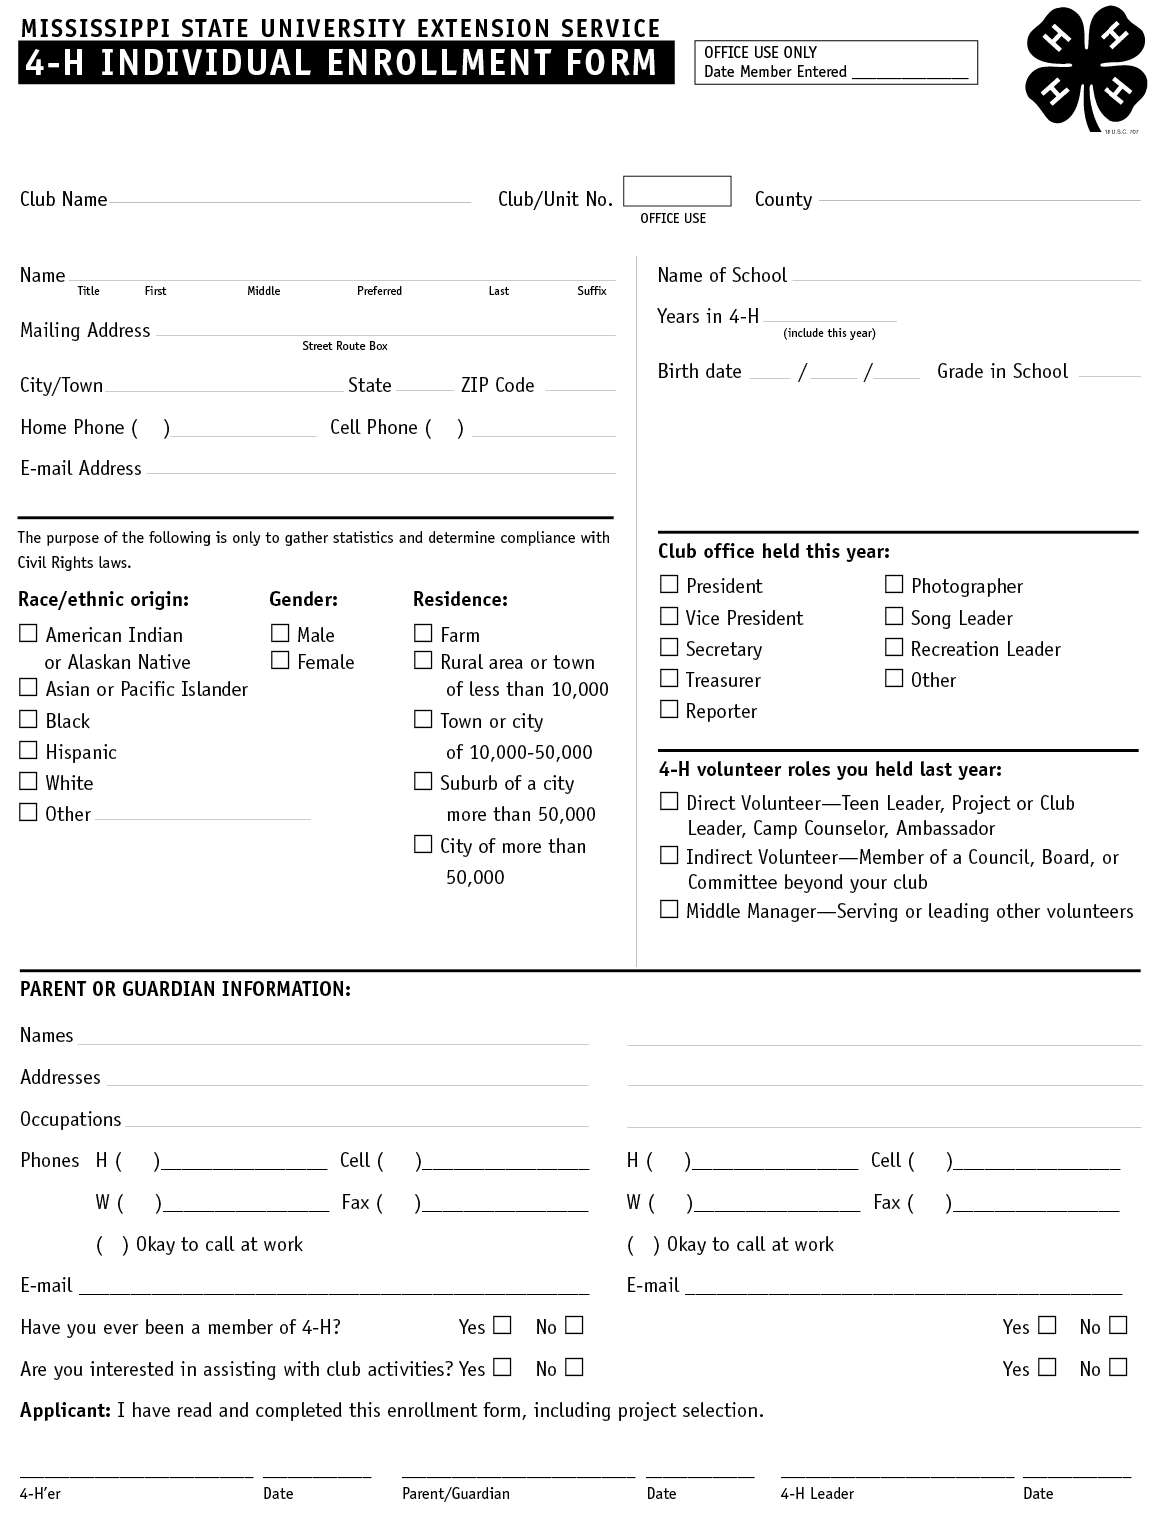 A copy of the 4-H Individual Enrollment form